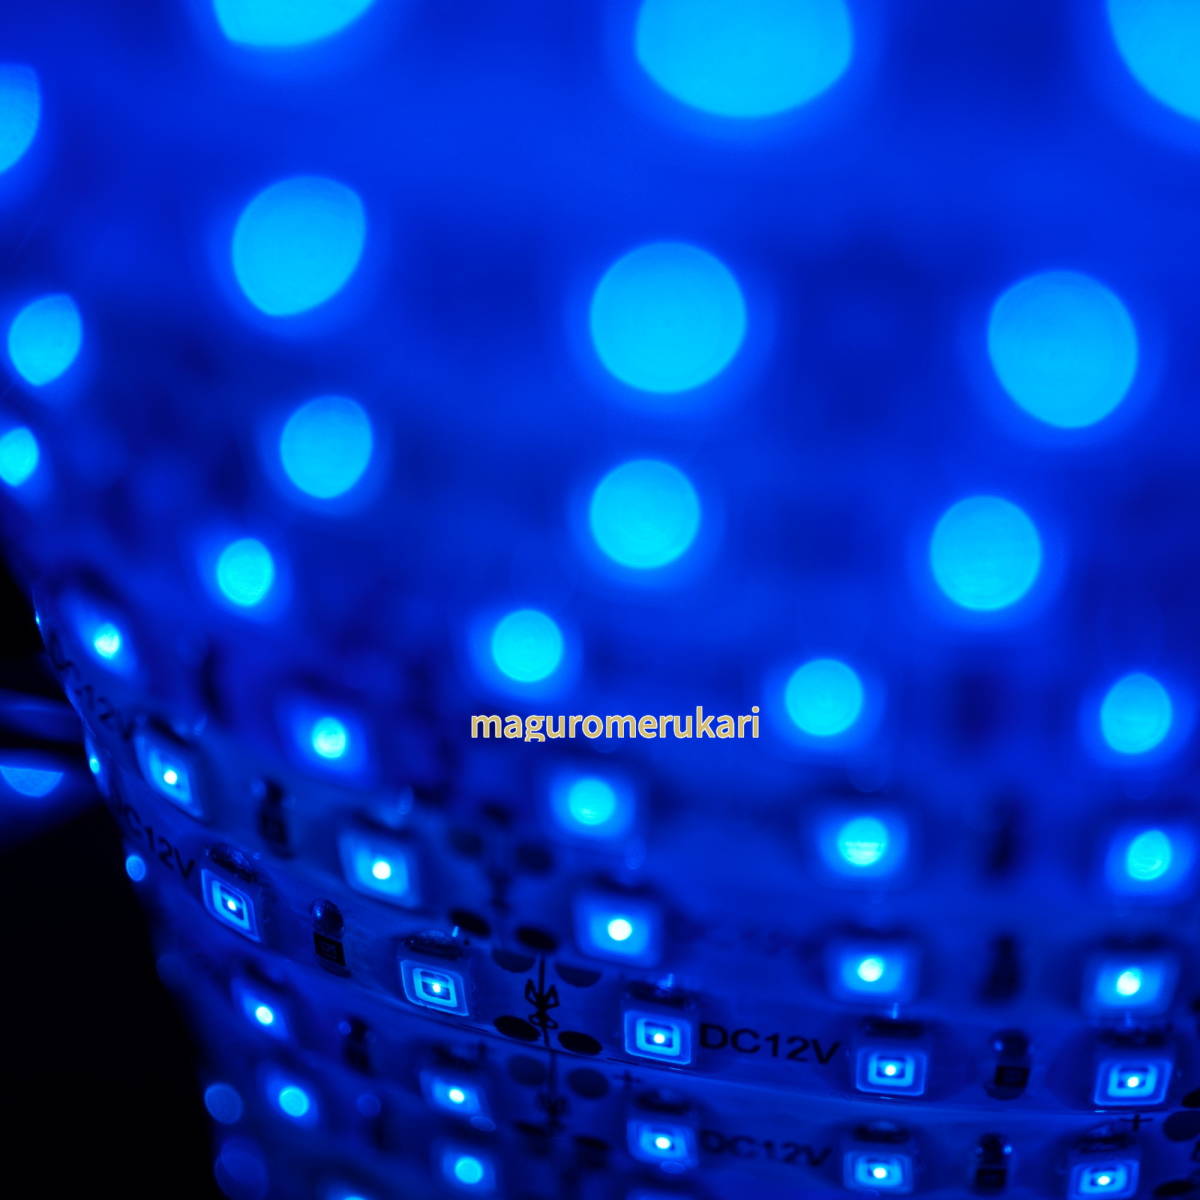  электропроводка легко!5m600 полосный LED лента голубой ( синий ) одним движением коннектор 10 шт водонепроницаемый 12V DIY машина мотоцикл мопед и т.п.. аксессуары . интерьер 